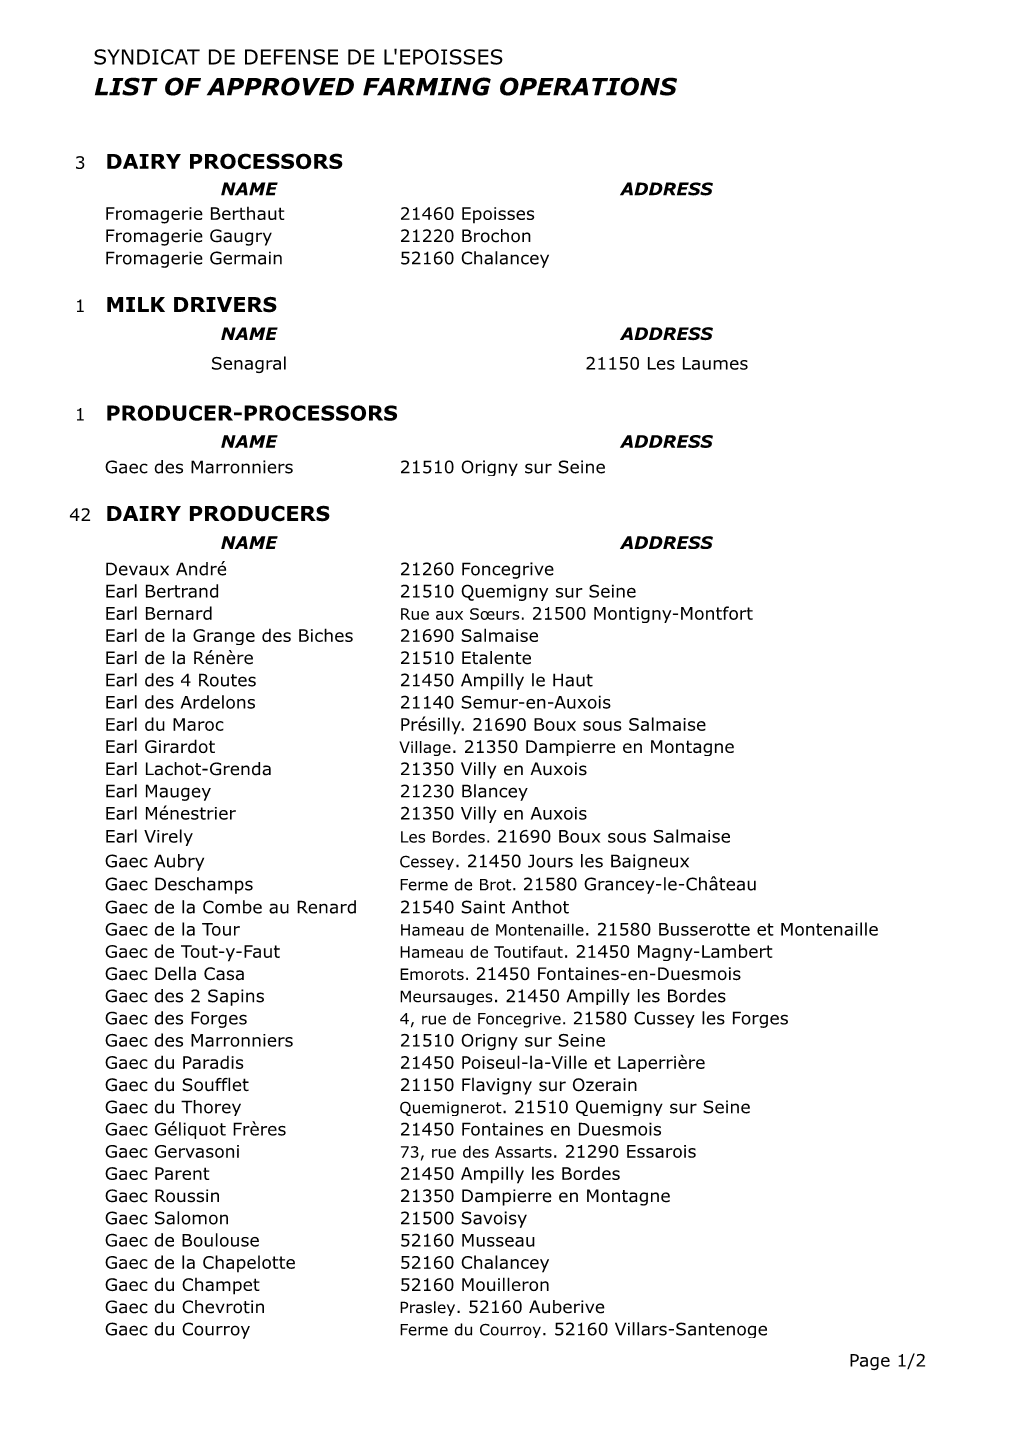 Liste Opérateurs AOC Epoisses Février 2014